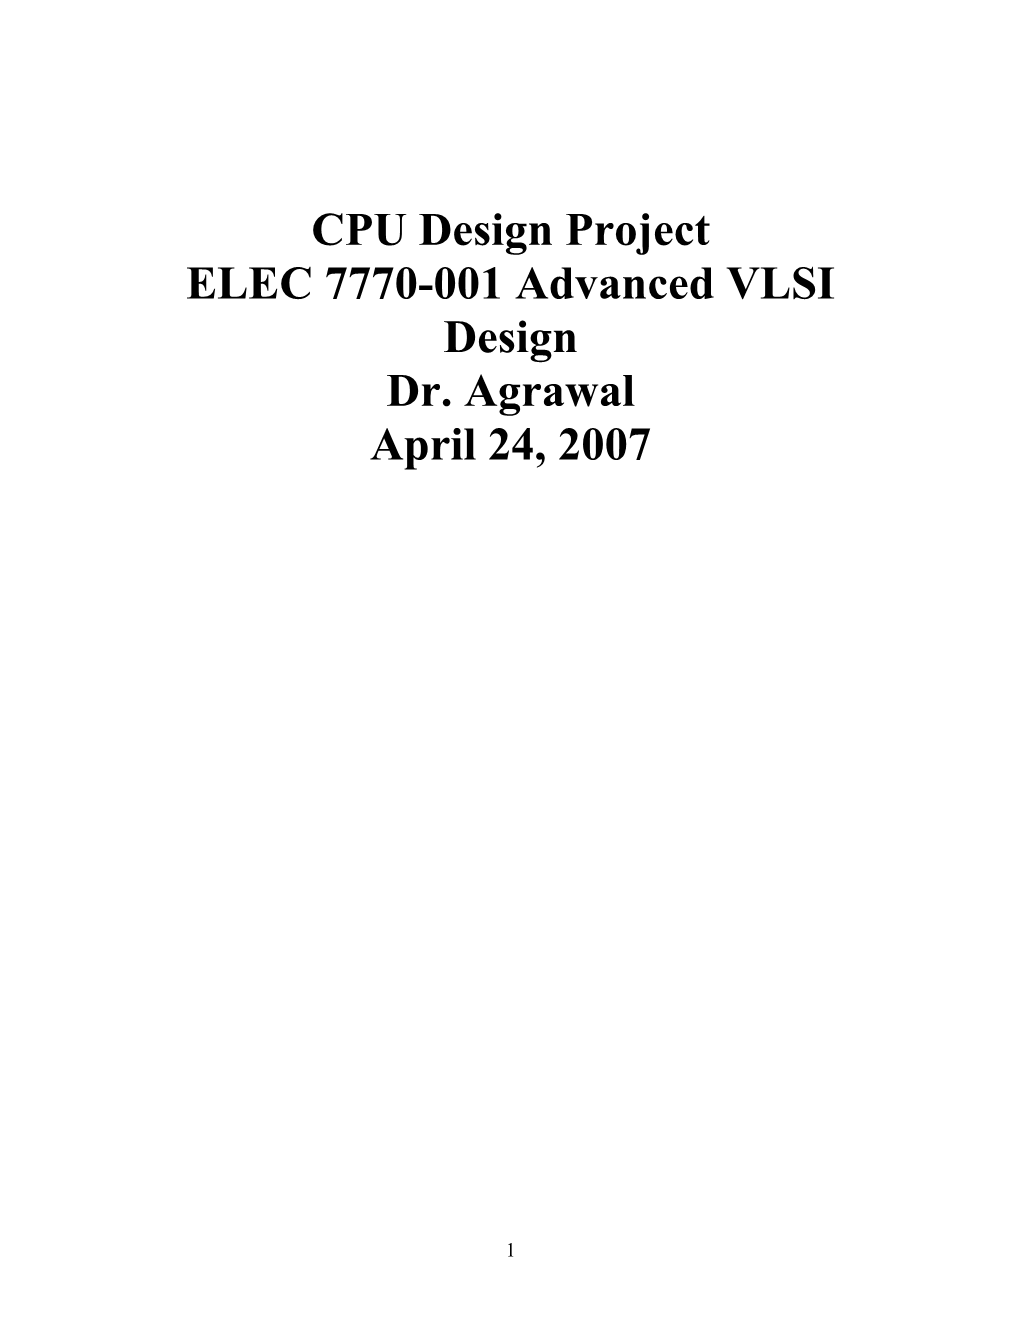 ELEC 7770-001 Advanced VLSI Design